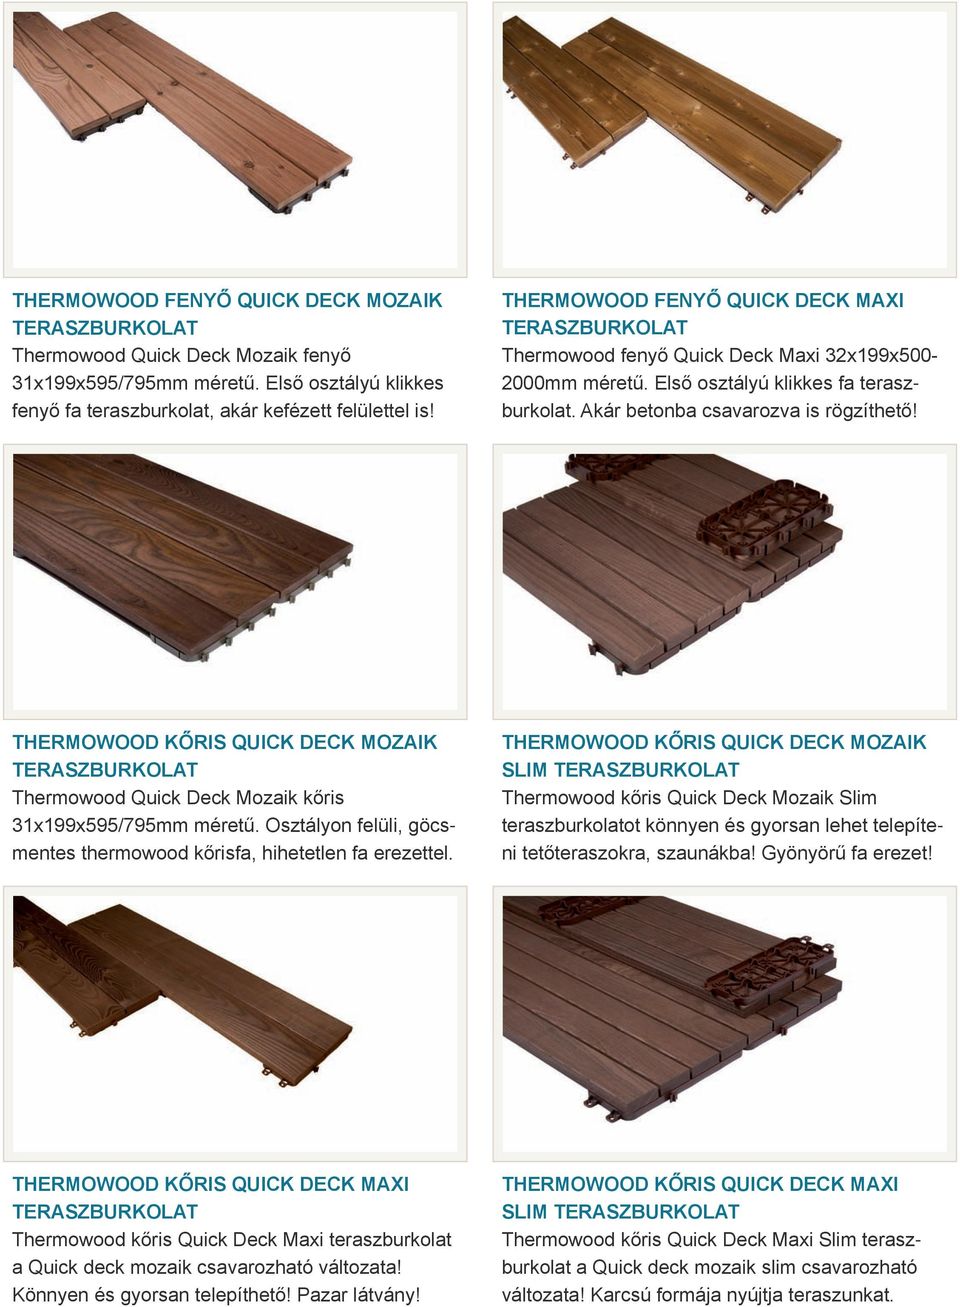 Thermowood kőris Quick Deck Mozaik teraszburkolat Thermowood Quick Deck Mozaik kőris 31x199x595/795mm méretű. Osztályon felüli, göcsmentes thermowood kőrisfa, hihetetlen fa erezettel.